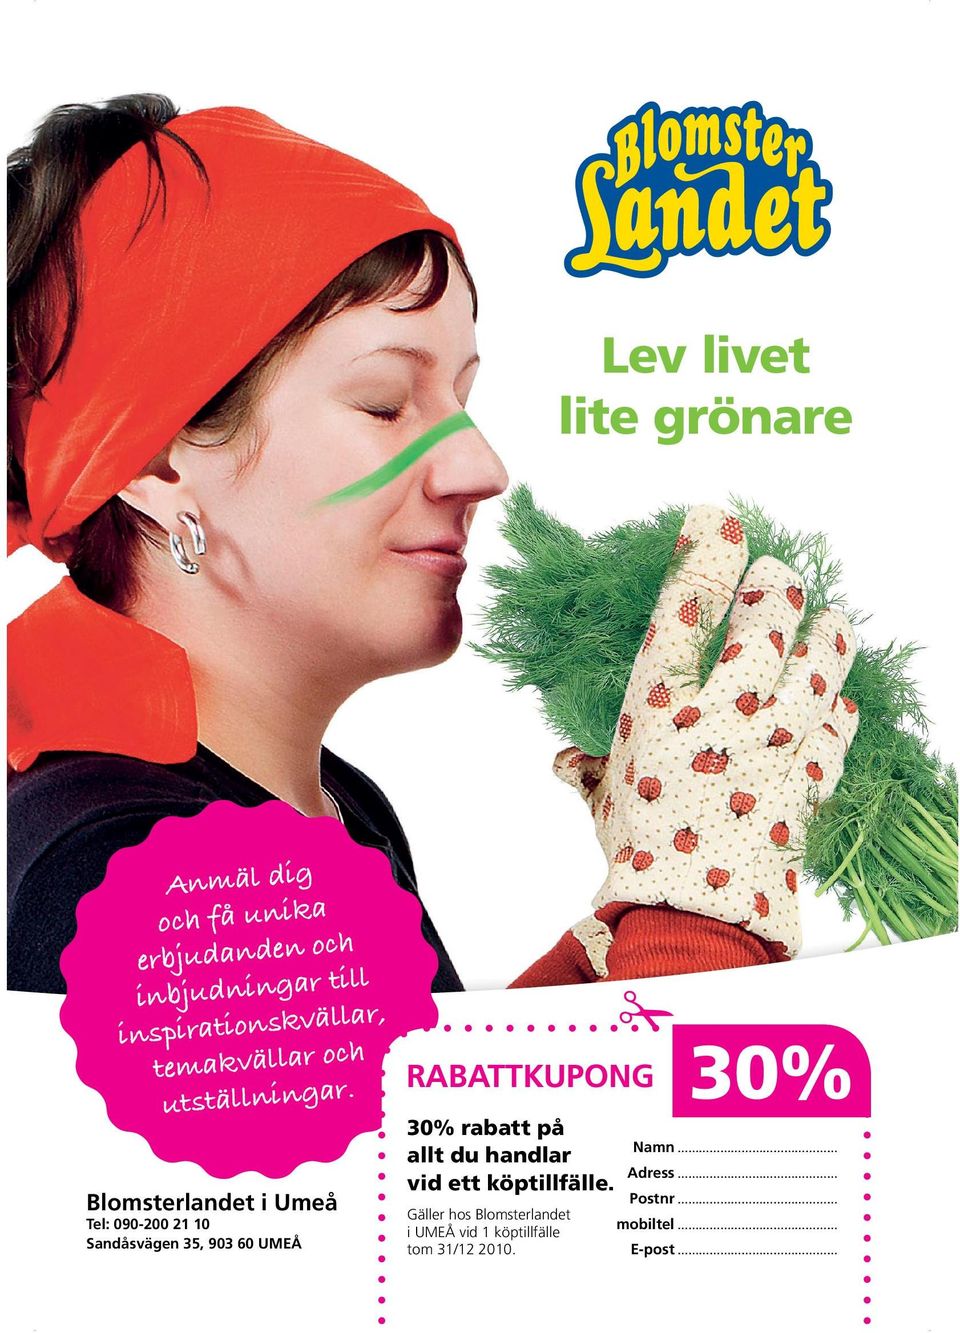 Blomsterlandet i Umeå Tel: 090-200 21 10 Sandåsvägen 35, 903 60 UMEÅ RABATTKUPONG 30% rabatt på allt